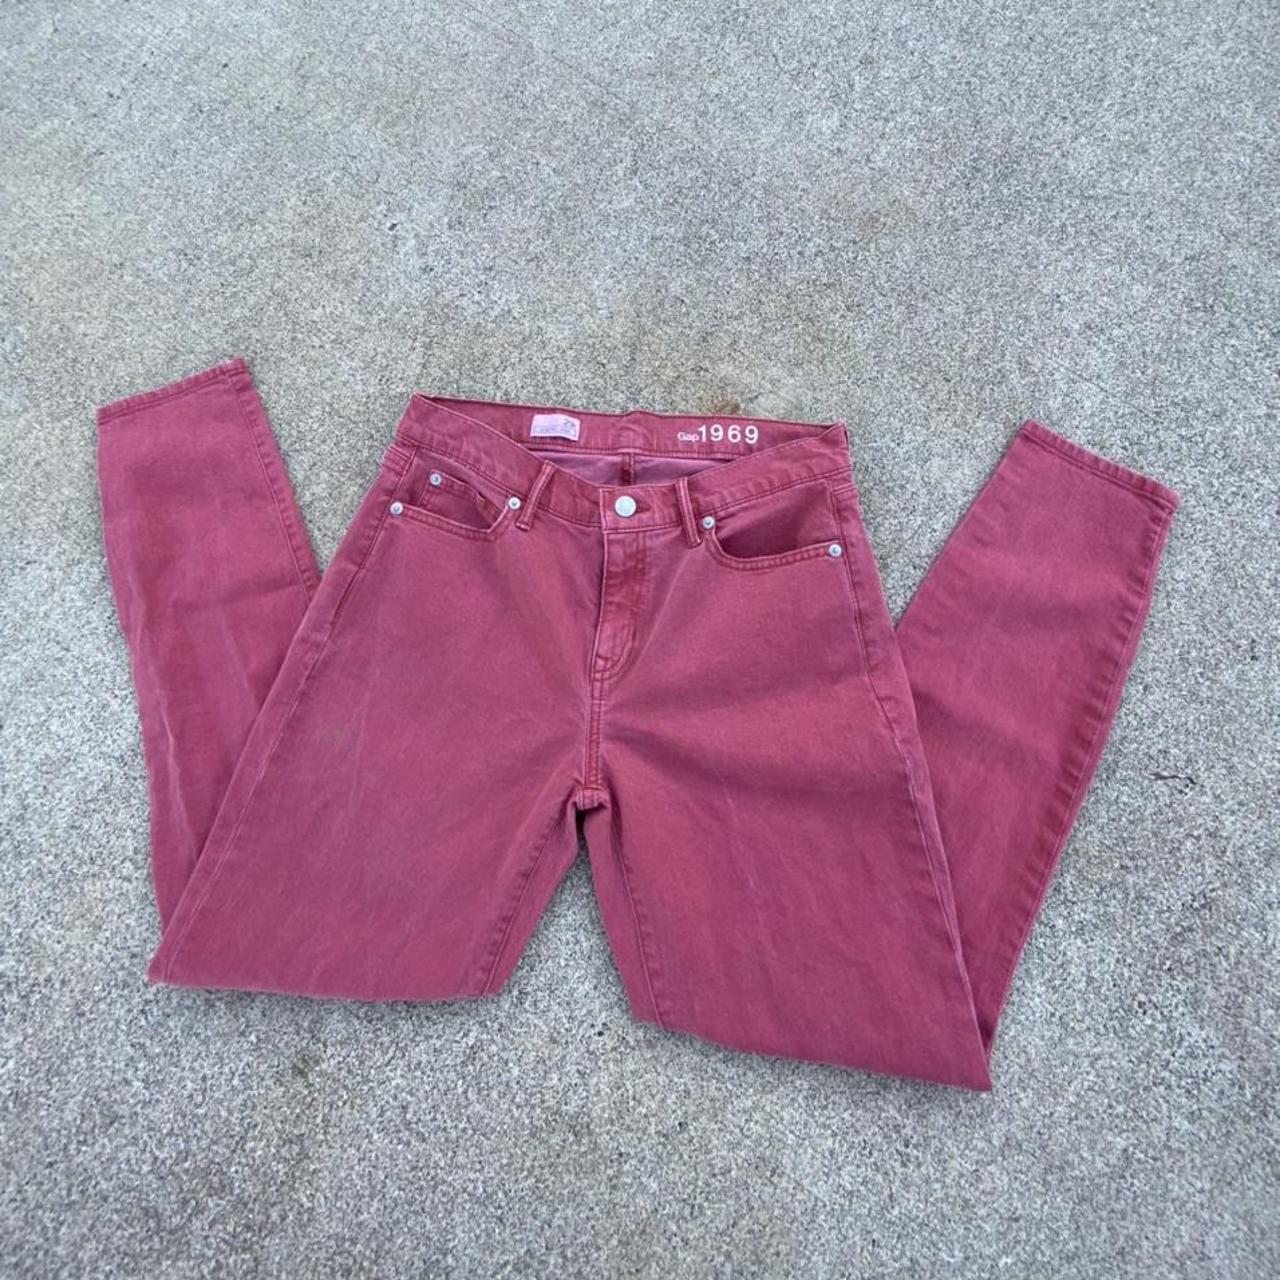 Vintage Red Gap Jeans •29r (size 10)• make an... - Depop